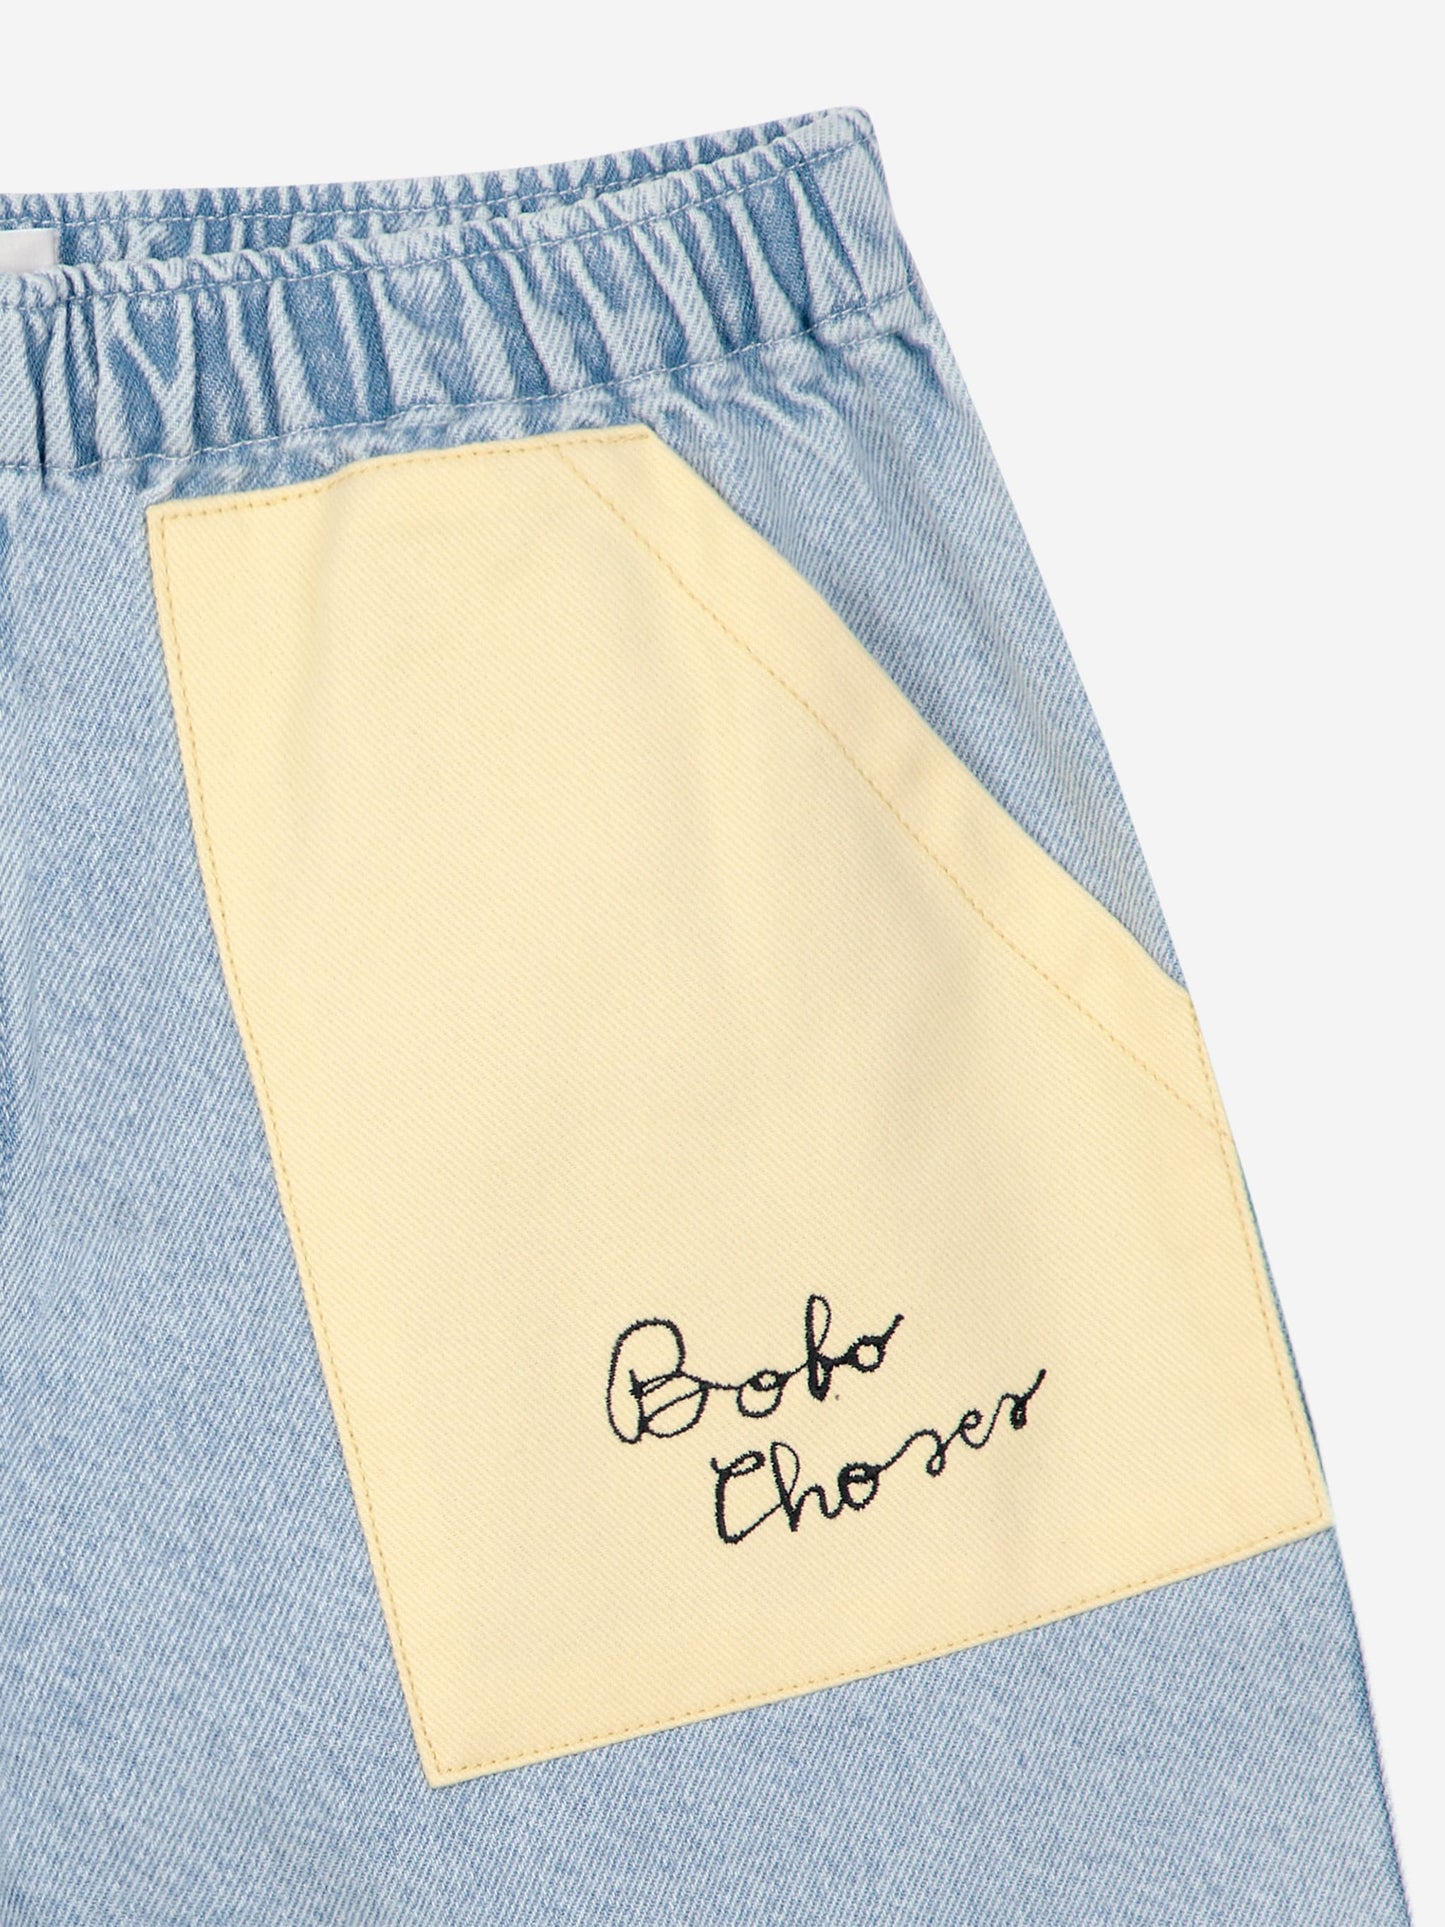 Pantalons curts texans Bobo Choses